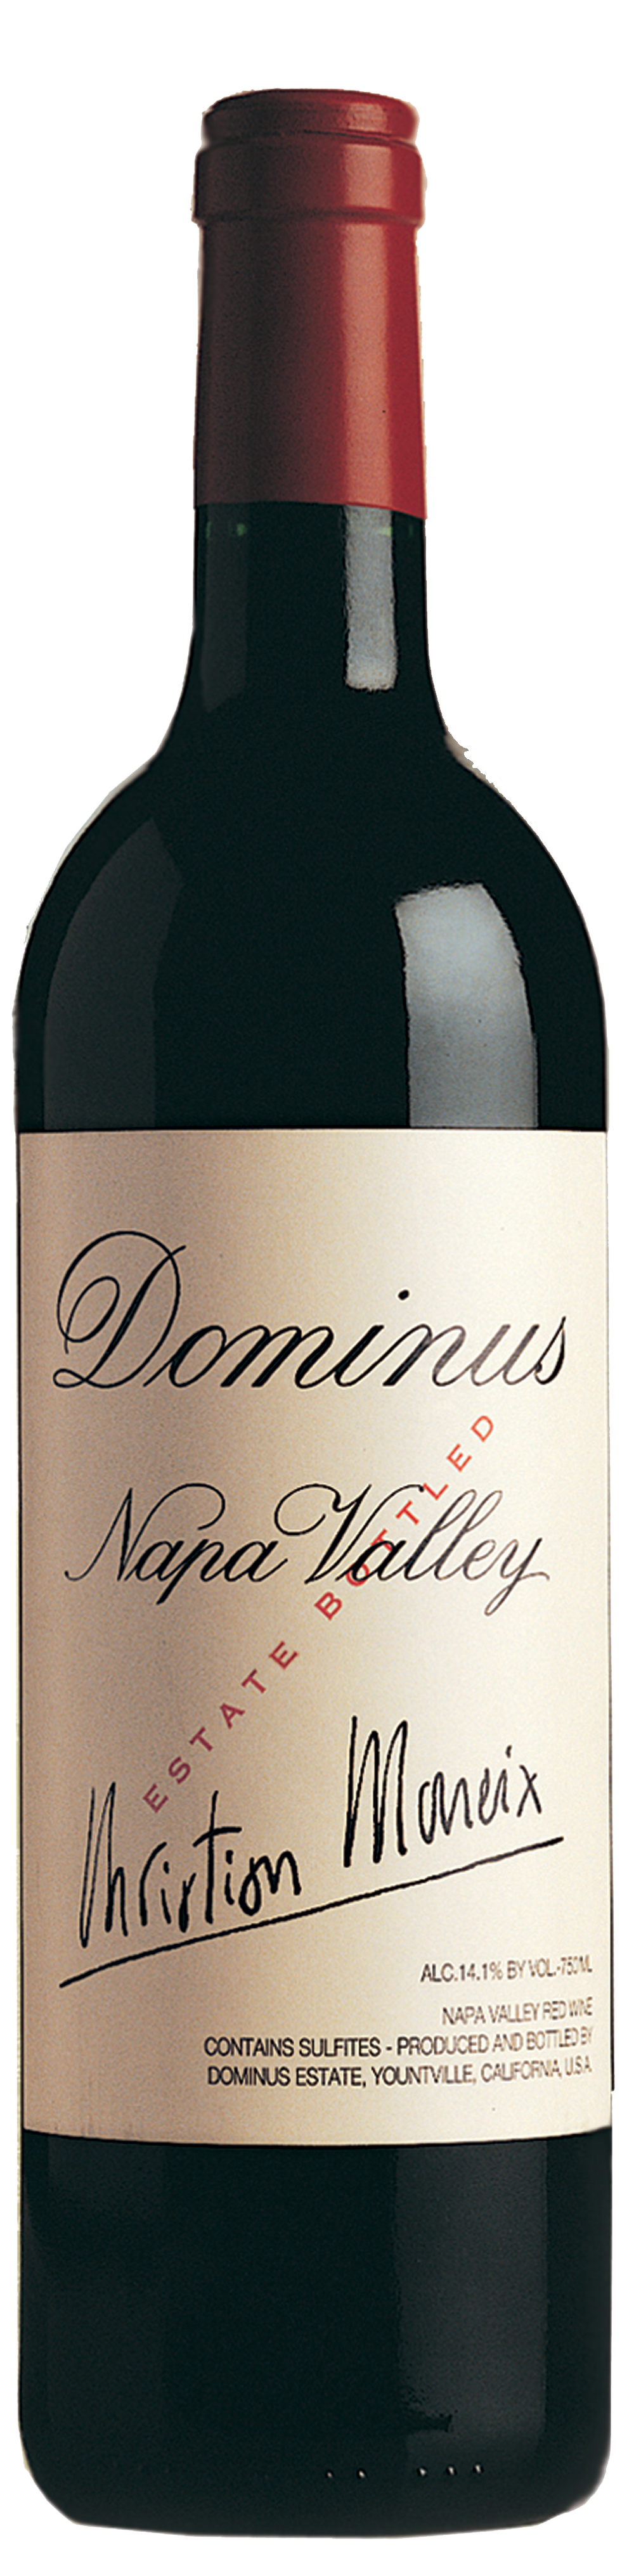 Bottle shot of 2004 Dominus